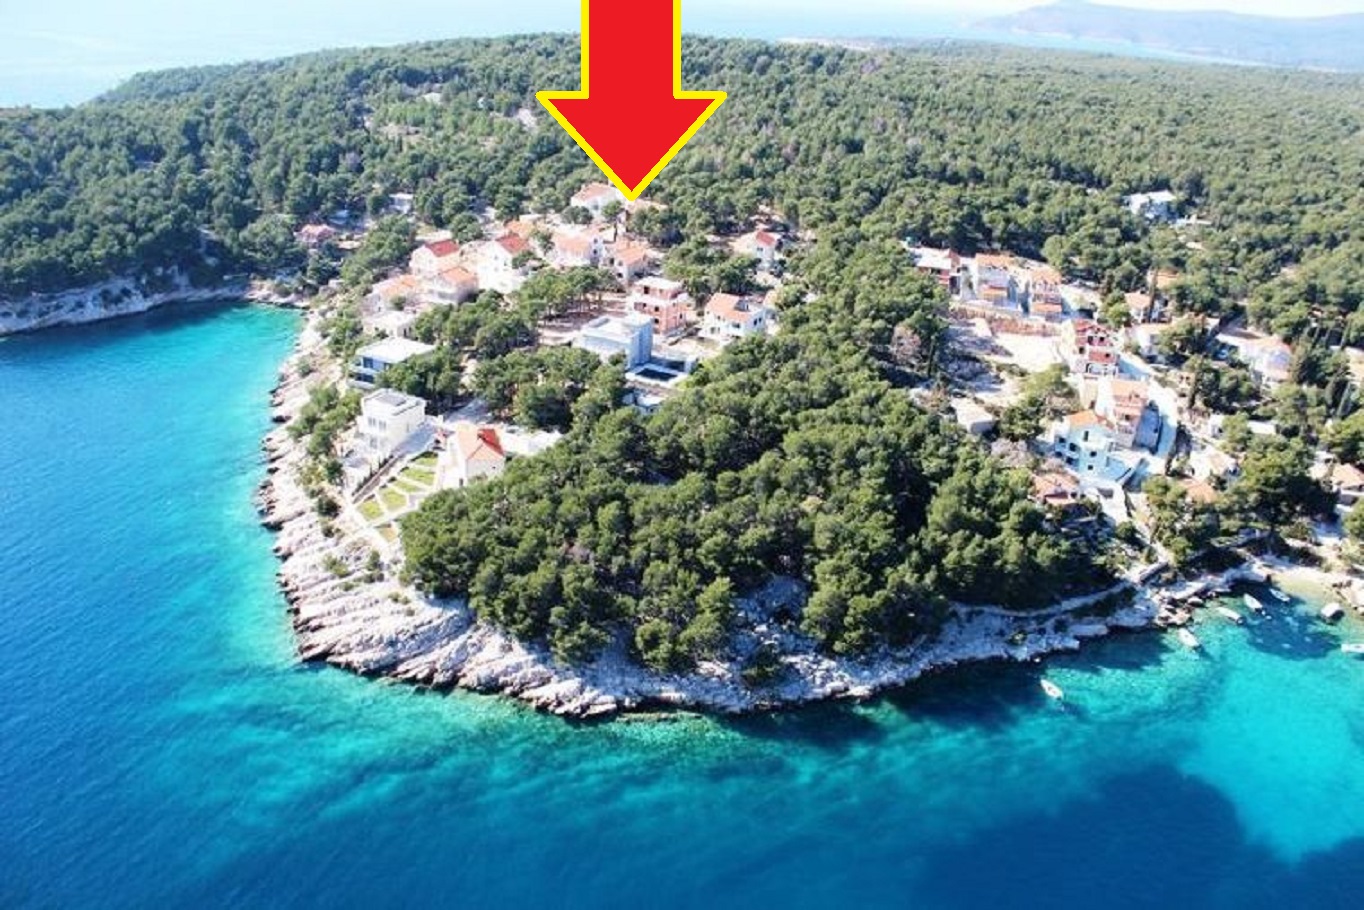 Apartments Deni - 70m from beach: A1(4+1) Cove Osibova (Milna) - Island Brac  - Croatia